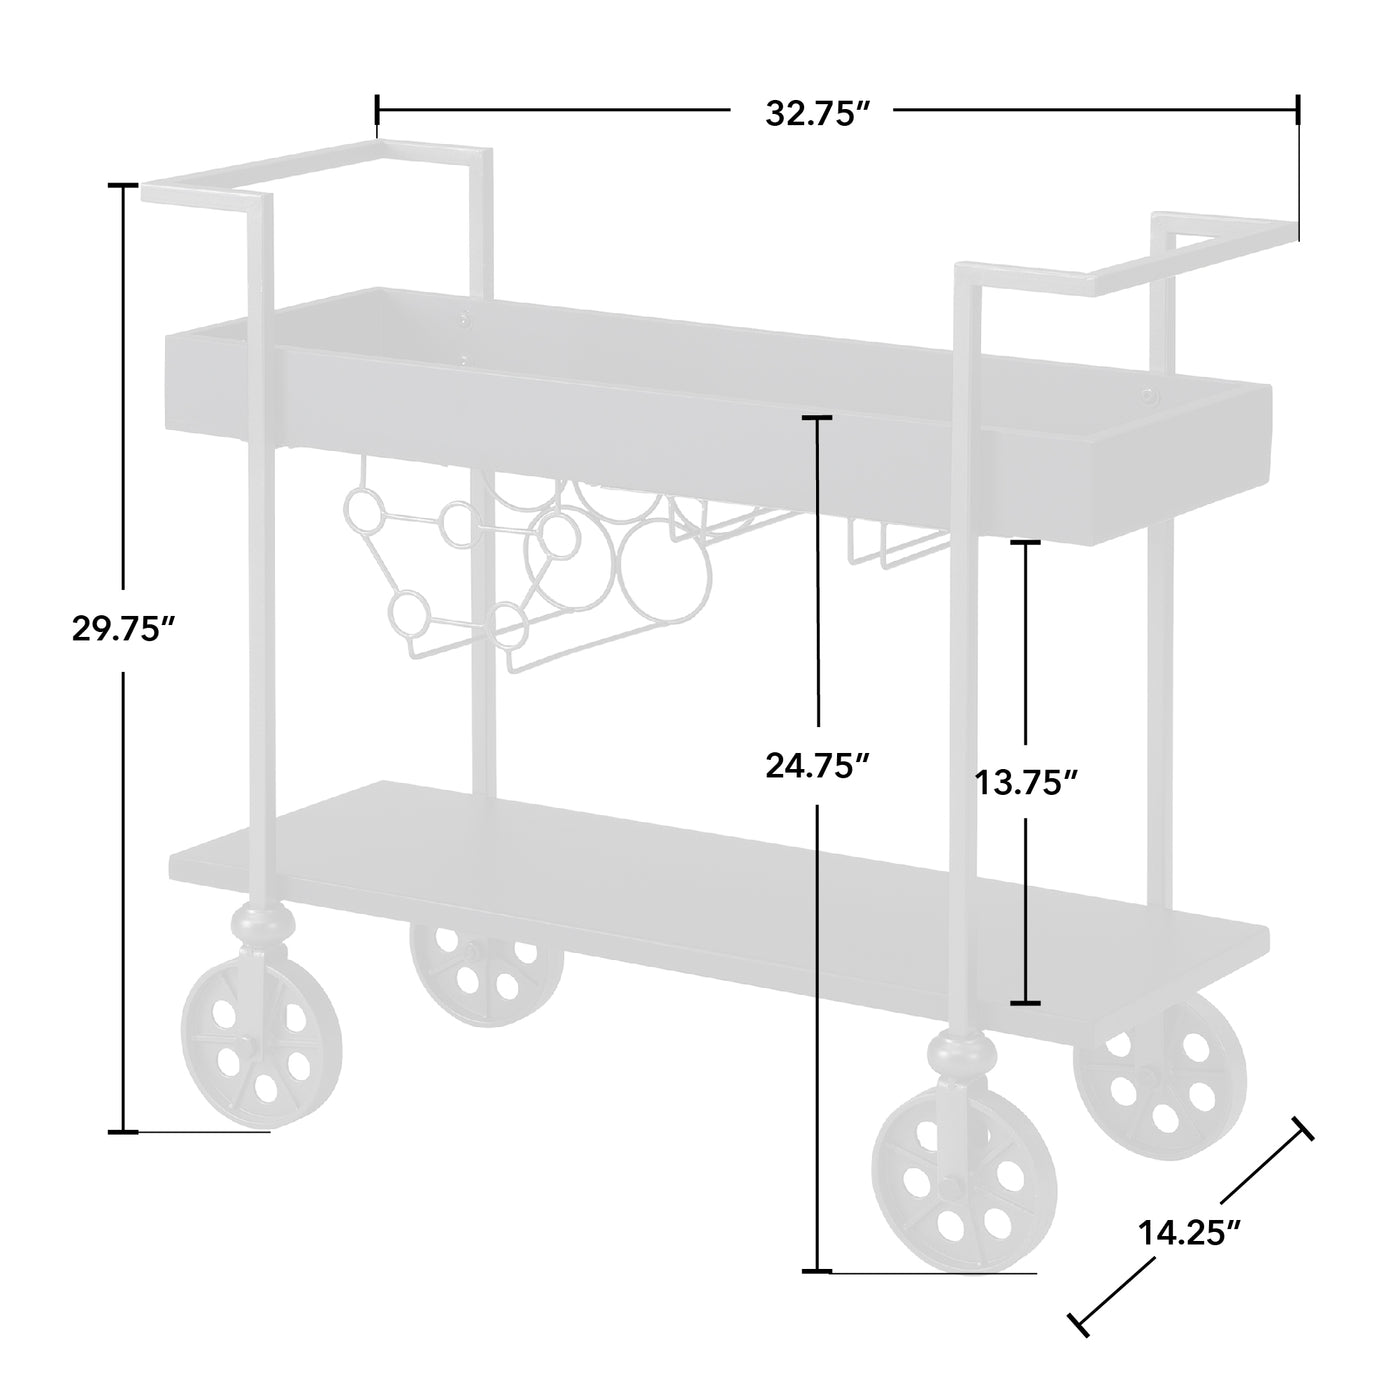 Factory Row Bar Cart